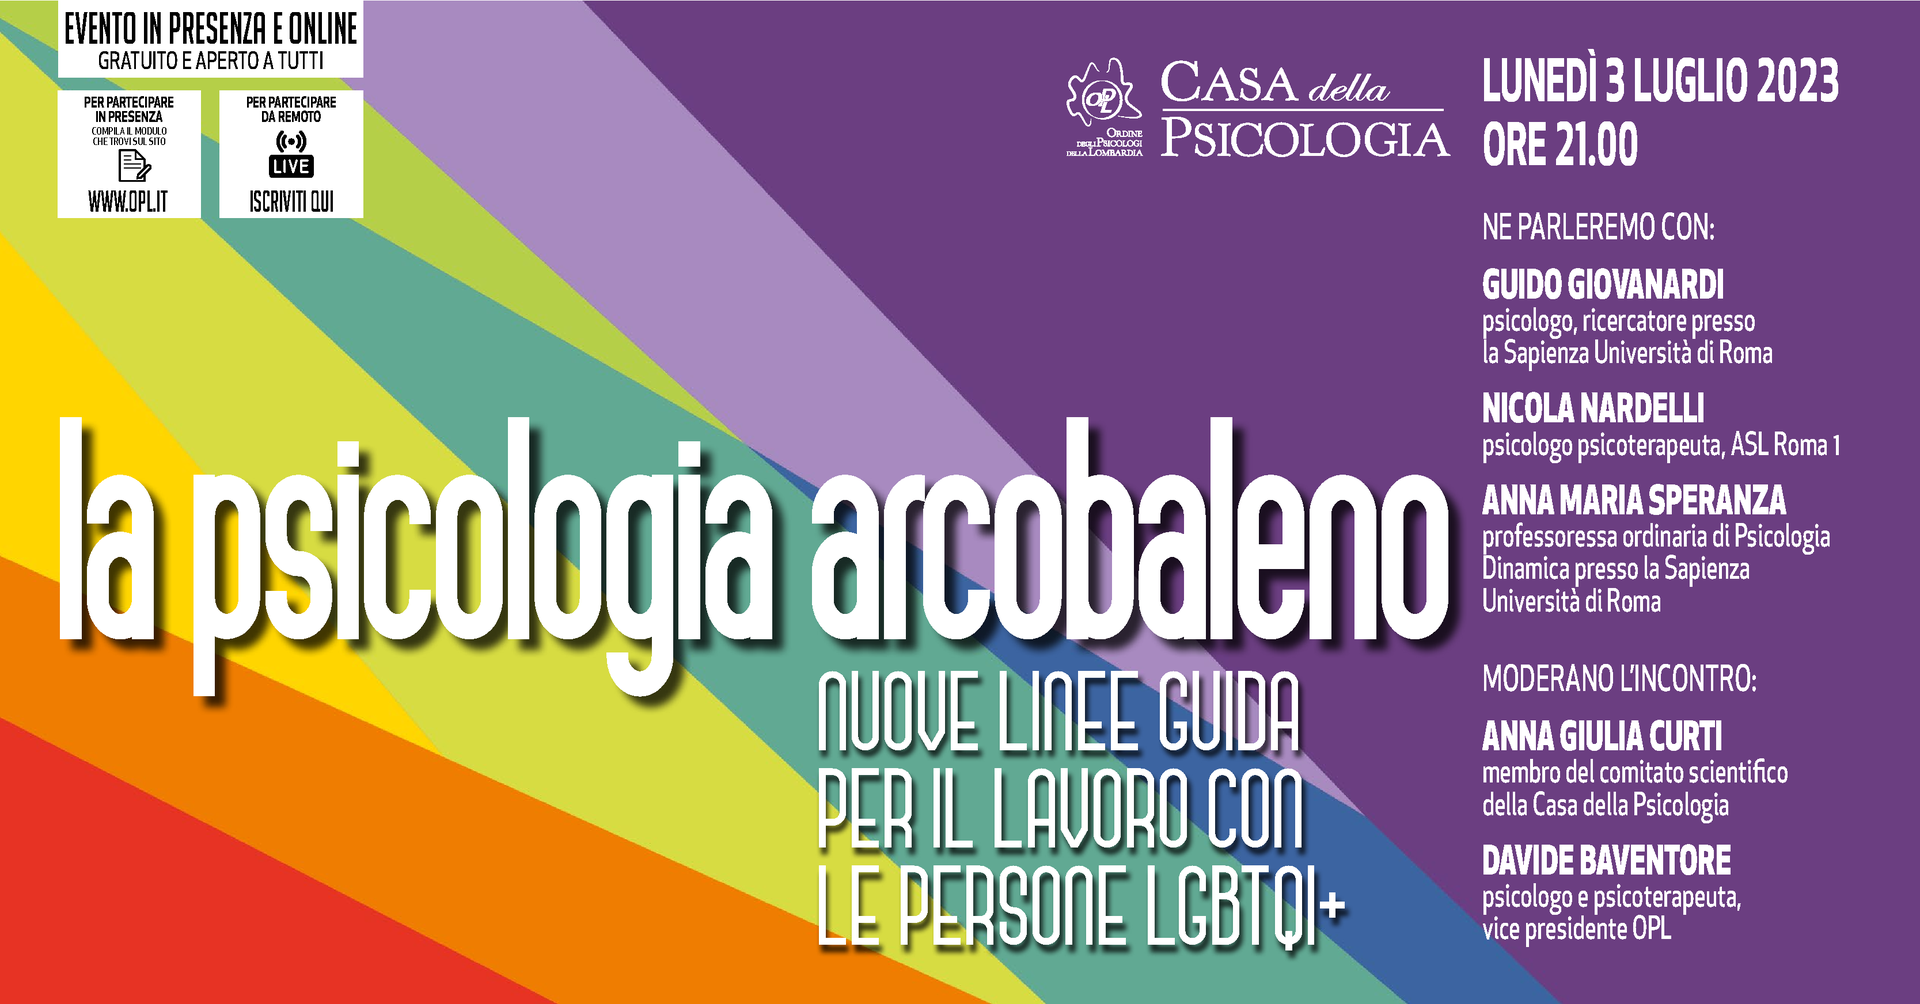 🌈 REMINDER partecipa questa sera - Casa della Psicologia - La psicologia arcobaleno. Nuove linee guida per il lavoro con le persone LGBTQI+